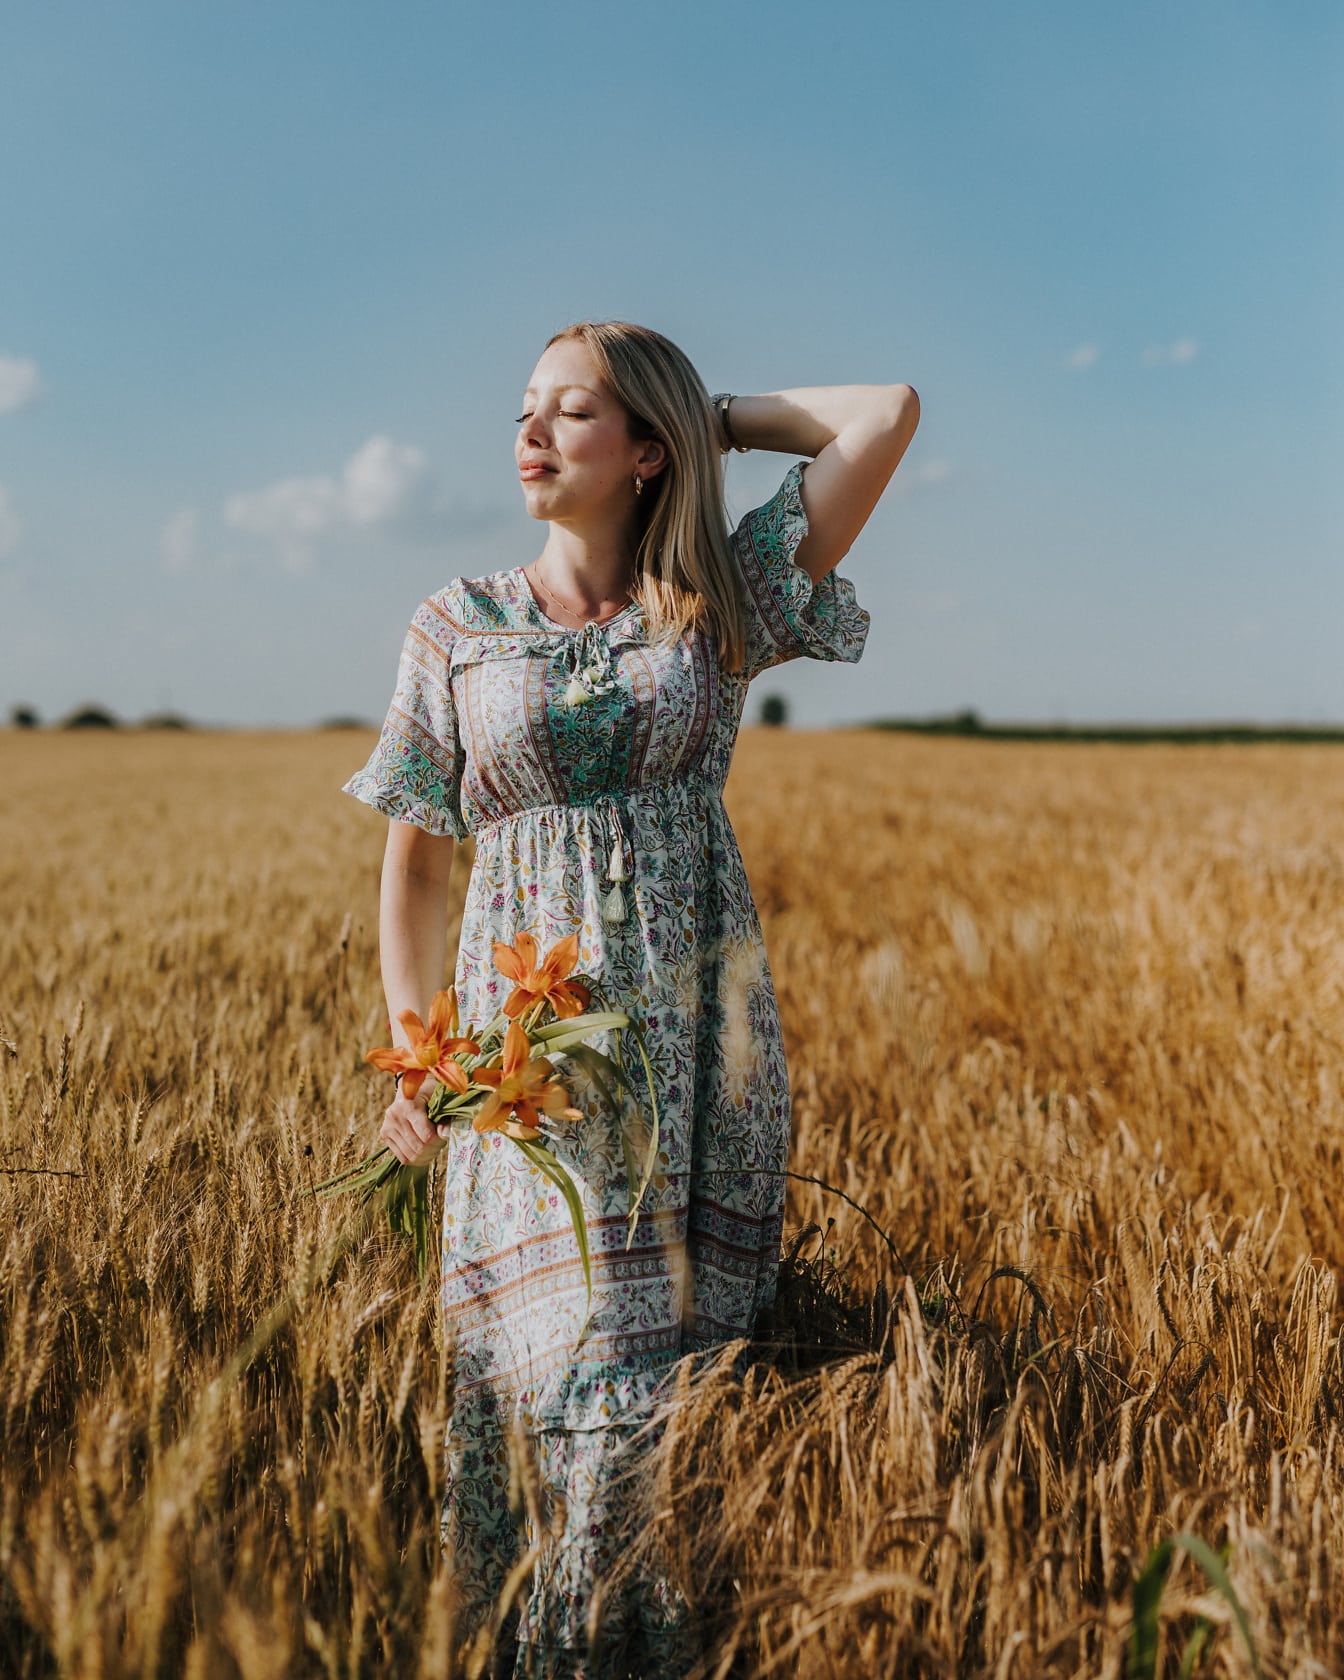 Chân dung của một cô gái tóc vàng xinh đẹp tuyệt đẹp trong một chiếc váy theo phong cách đồng quê cầm hoa trên cánh đồng lúa mì vào mùa hè